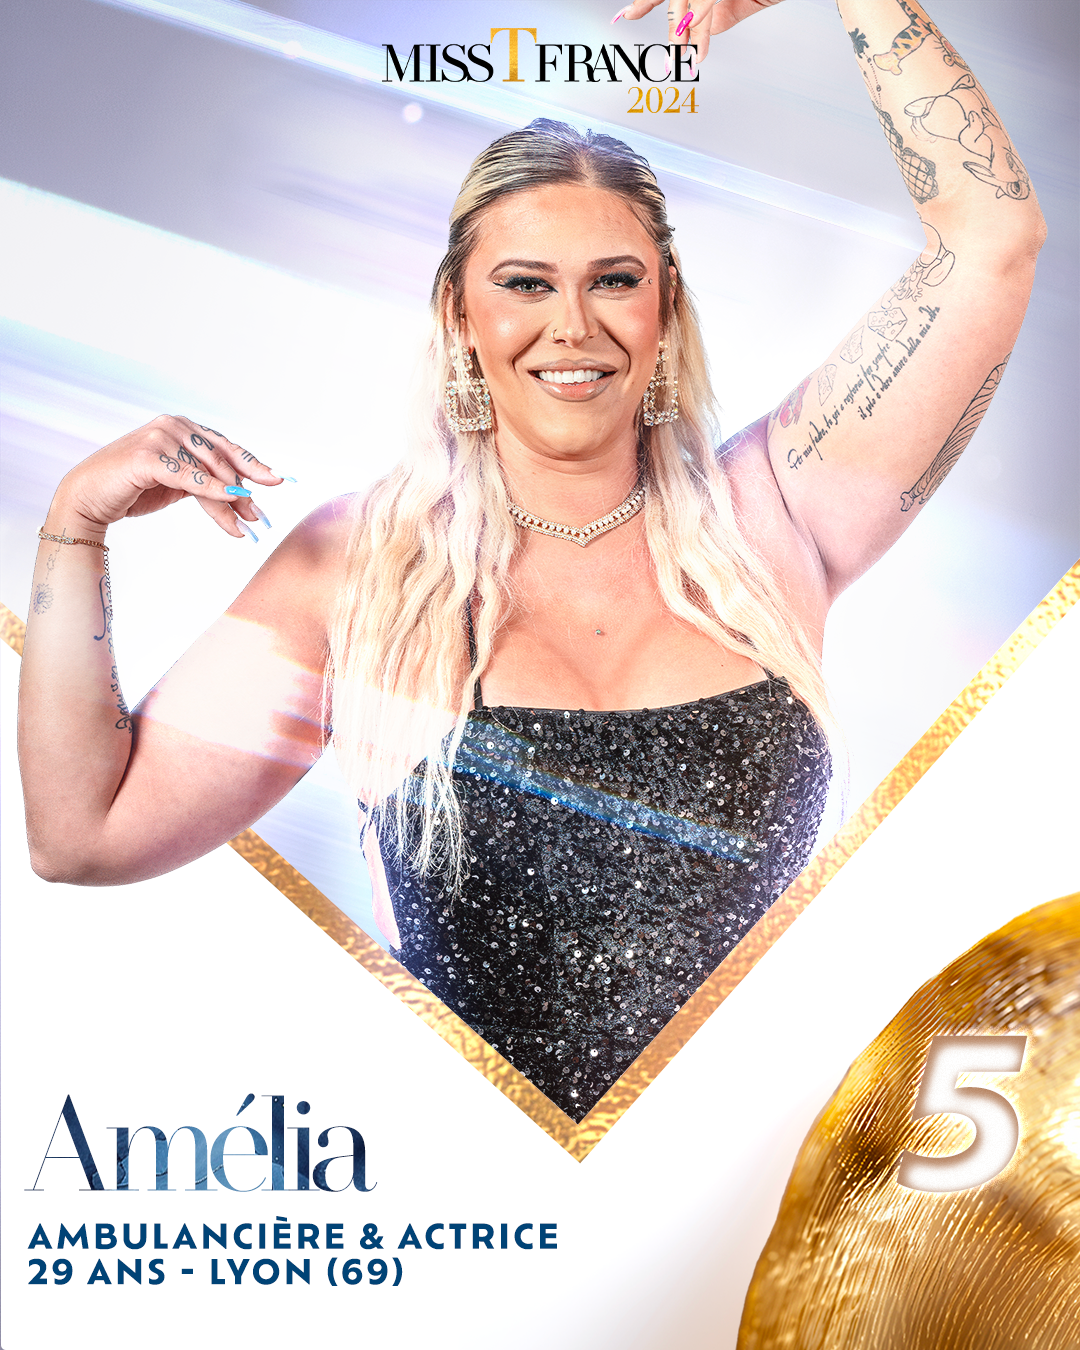 Amélia - Candidate n°5